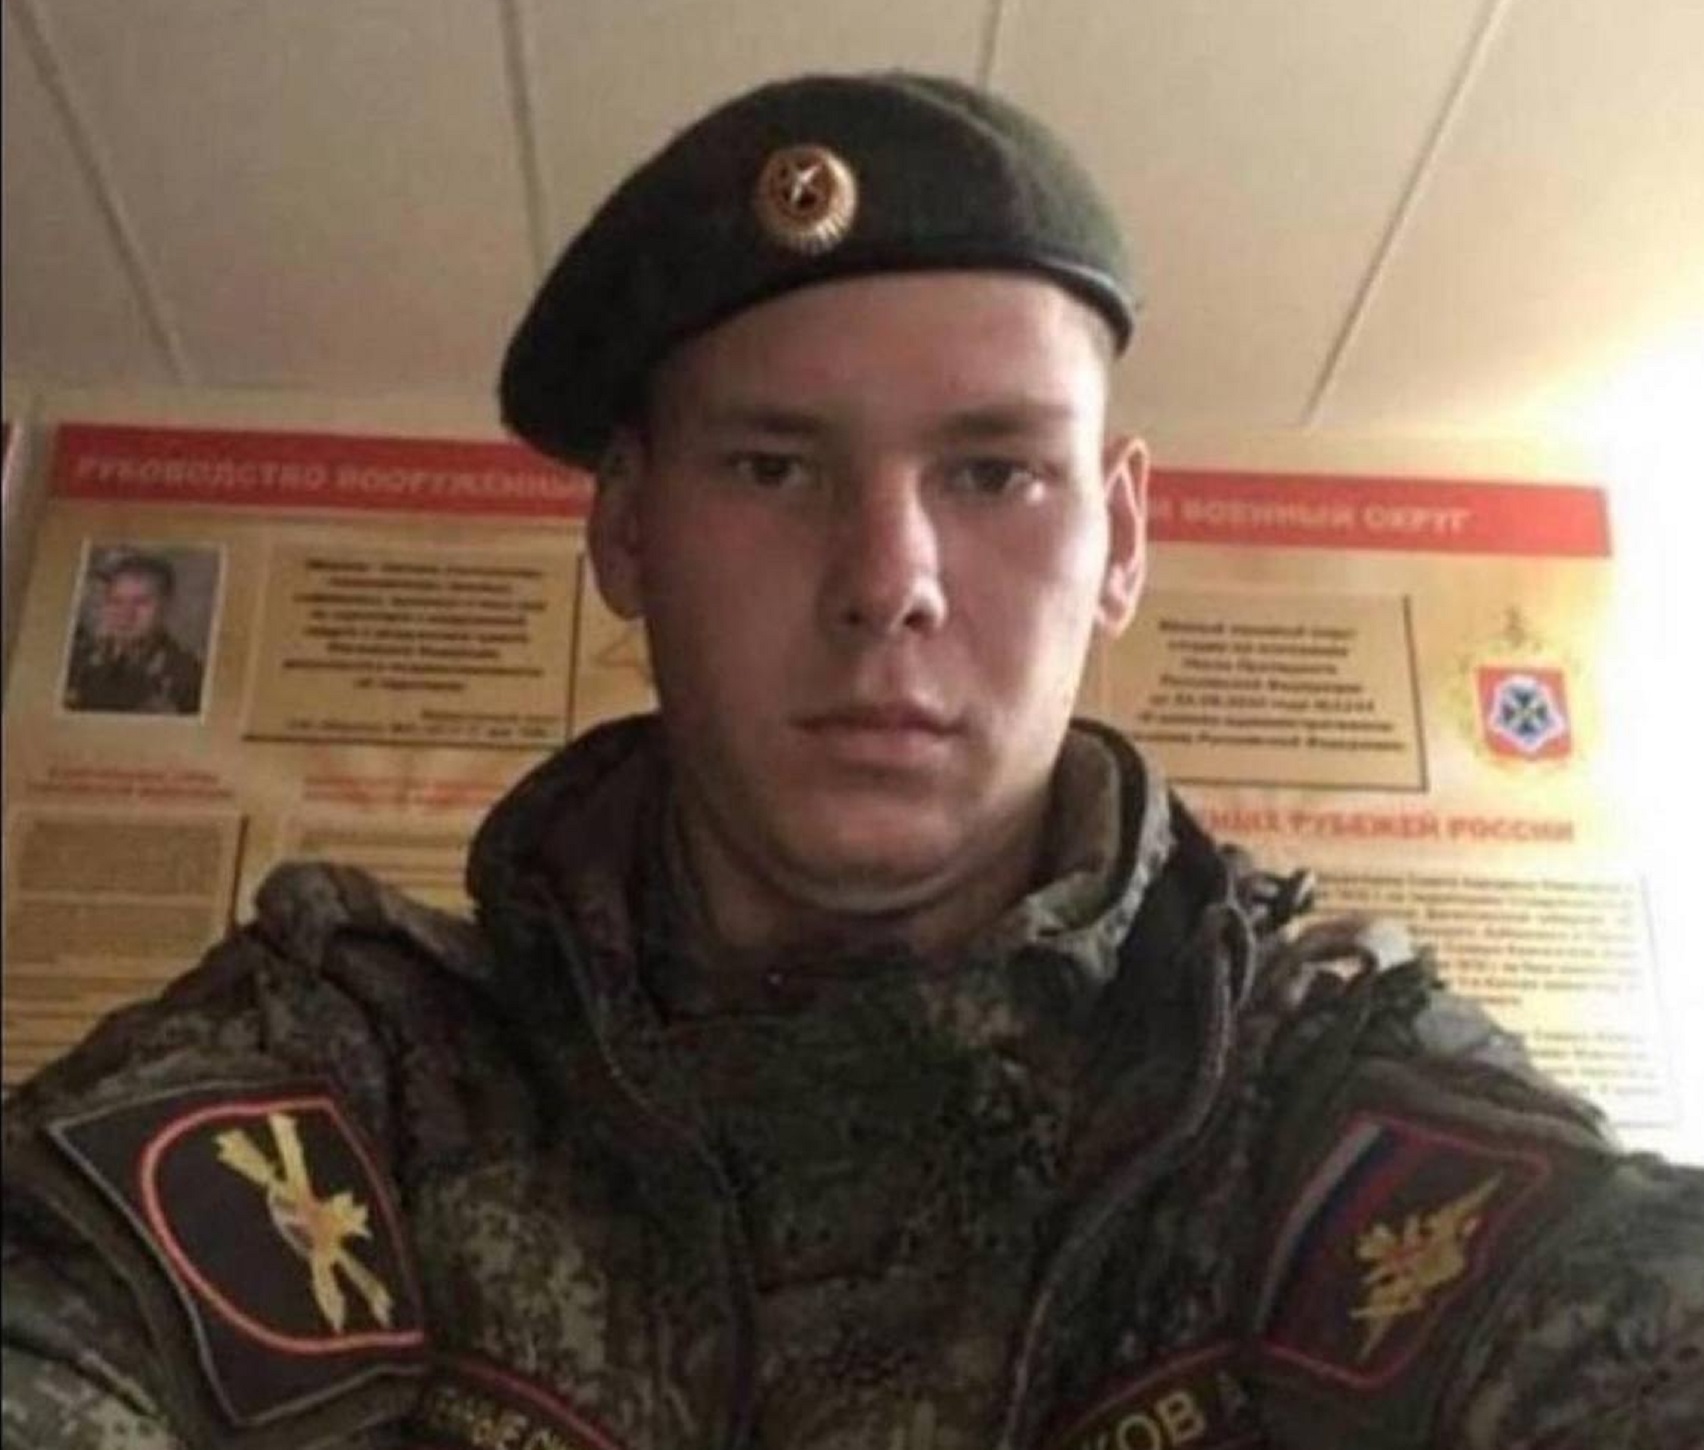 Πόλεμος στην Ουκρανία: Αυτός είναι ο Ρώσος στρατιώτης που φέρεται να βίασε και να σκότωσε παιδί ενός έτους